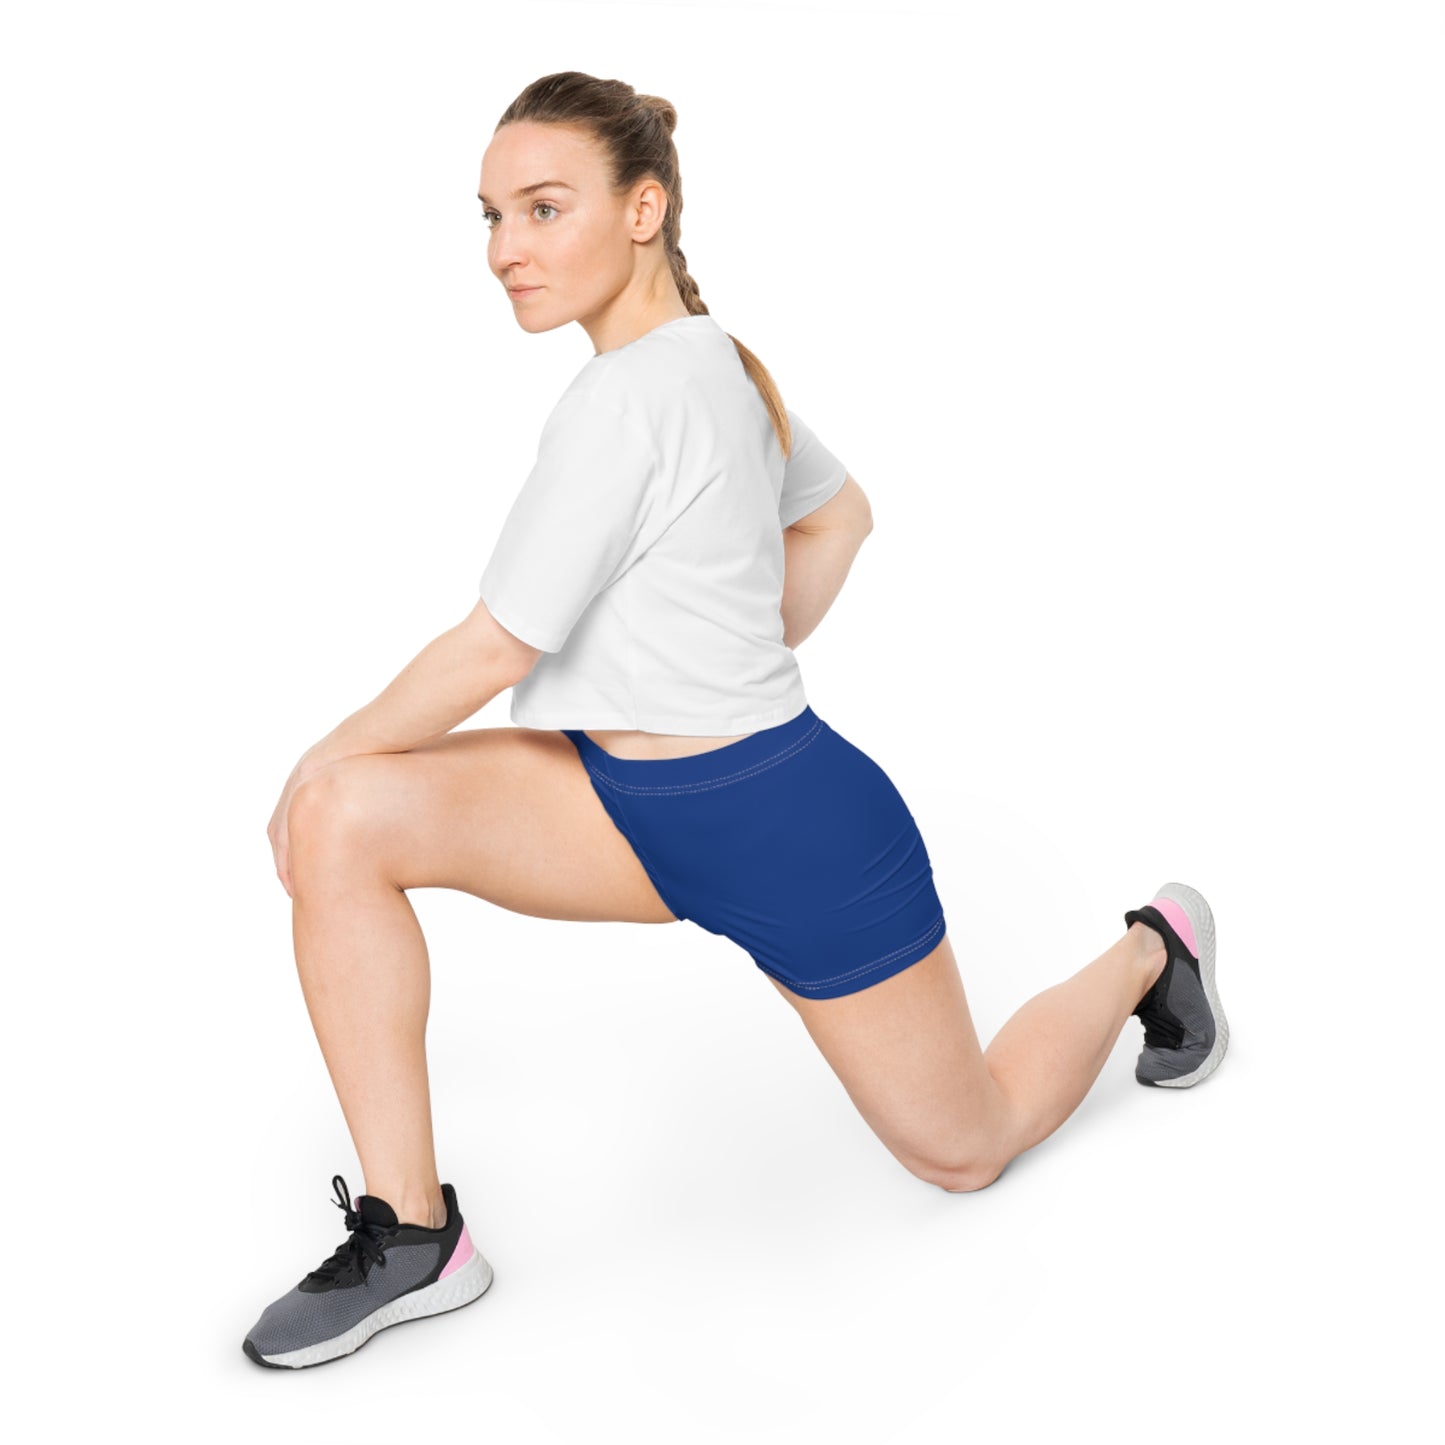 AlphaChic Workout Shorts - Blue (Leg Logo)